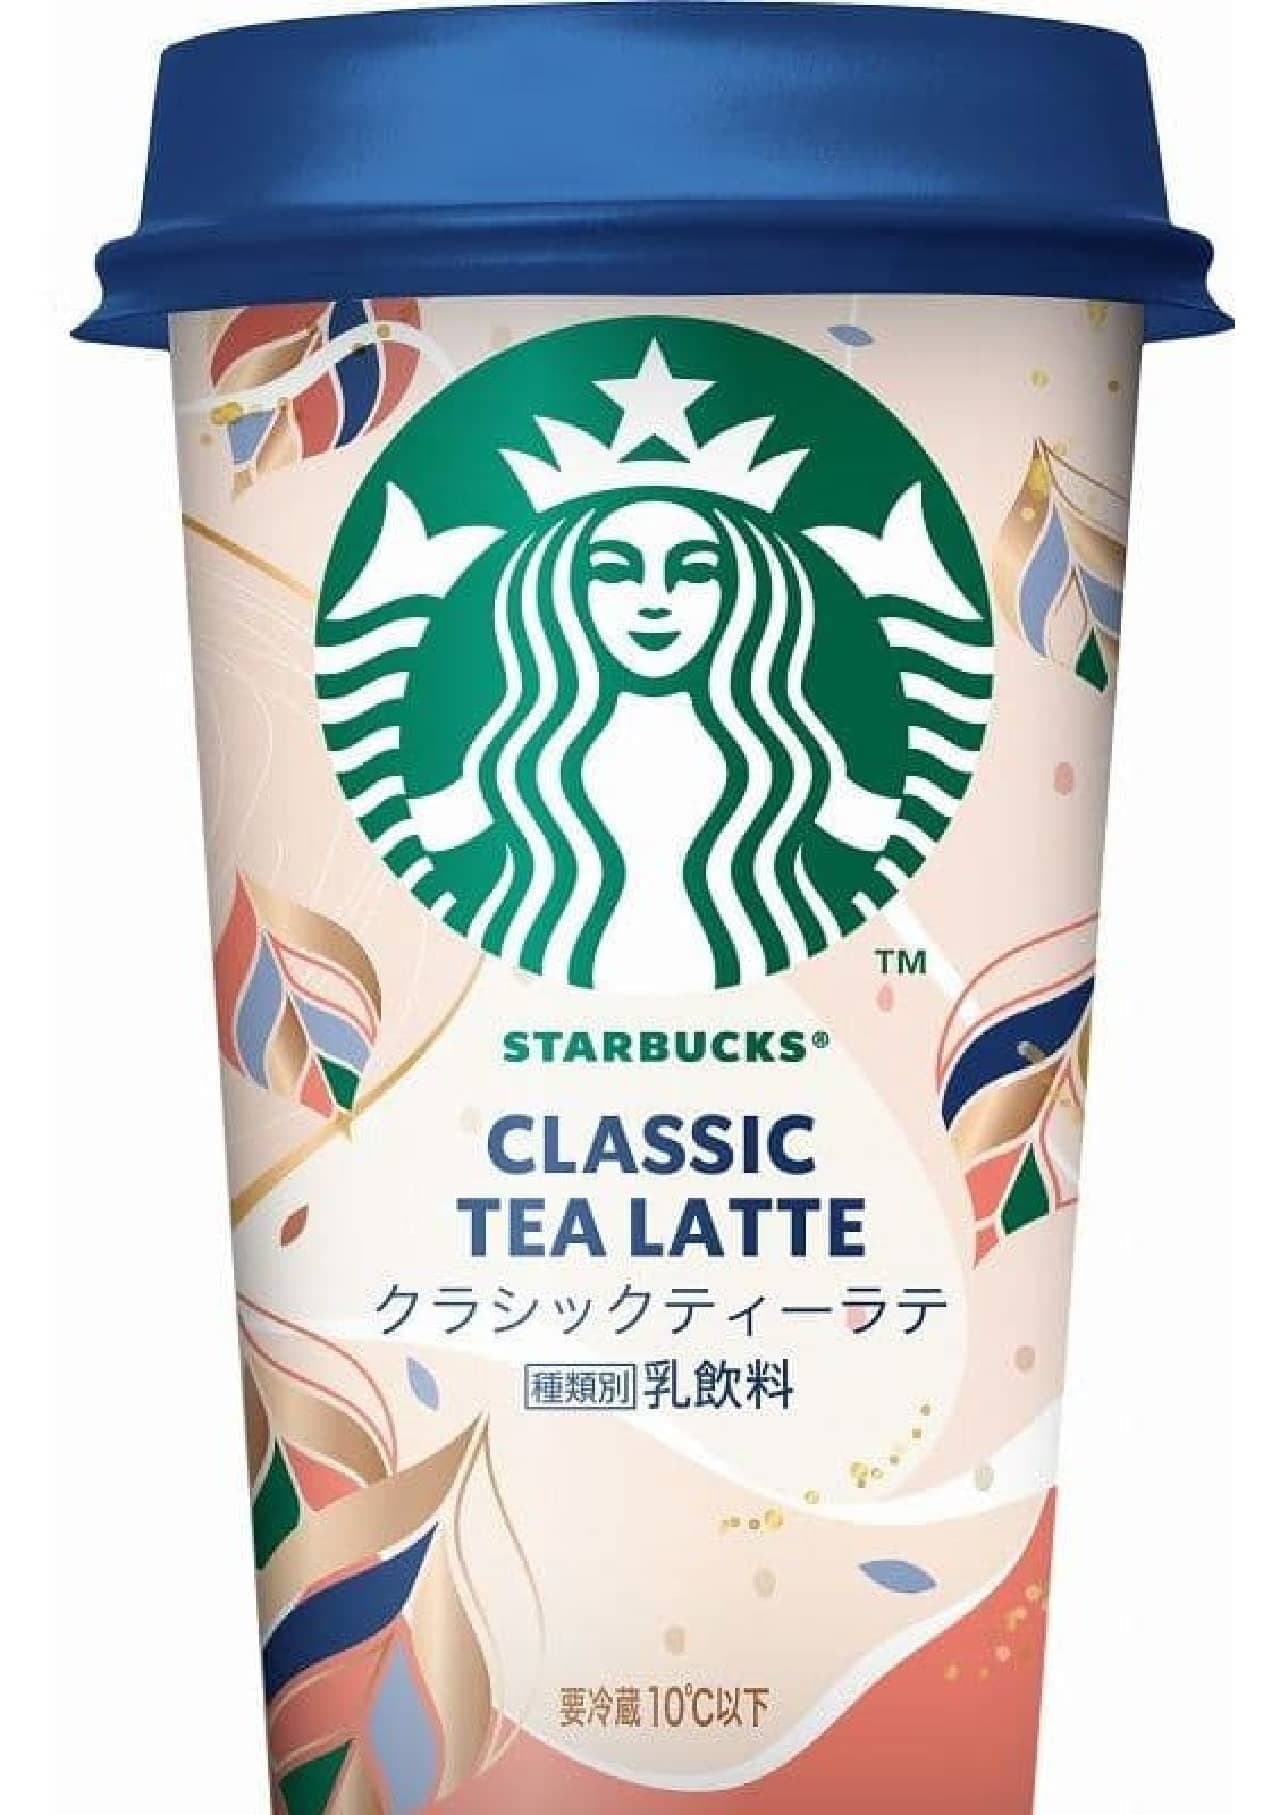 Starbucks Classic Tea Latte